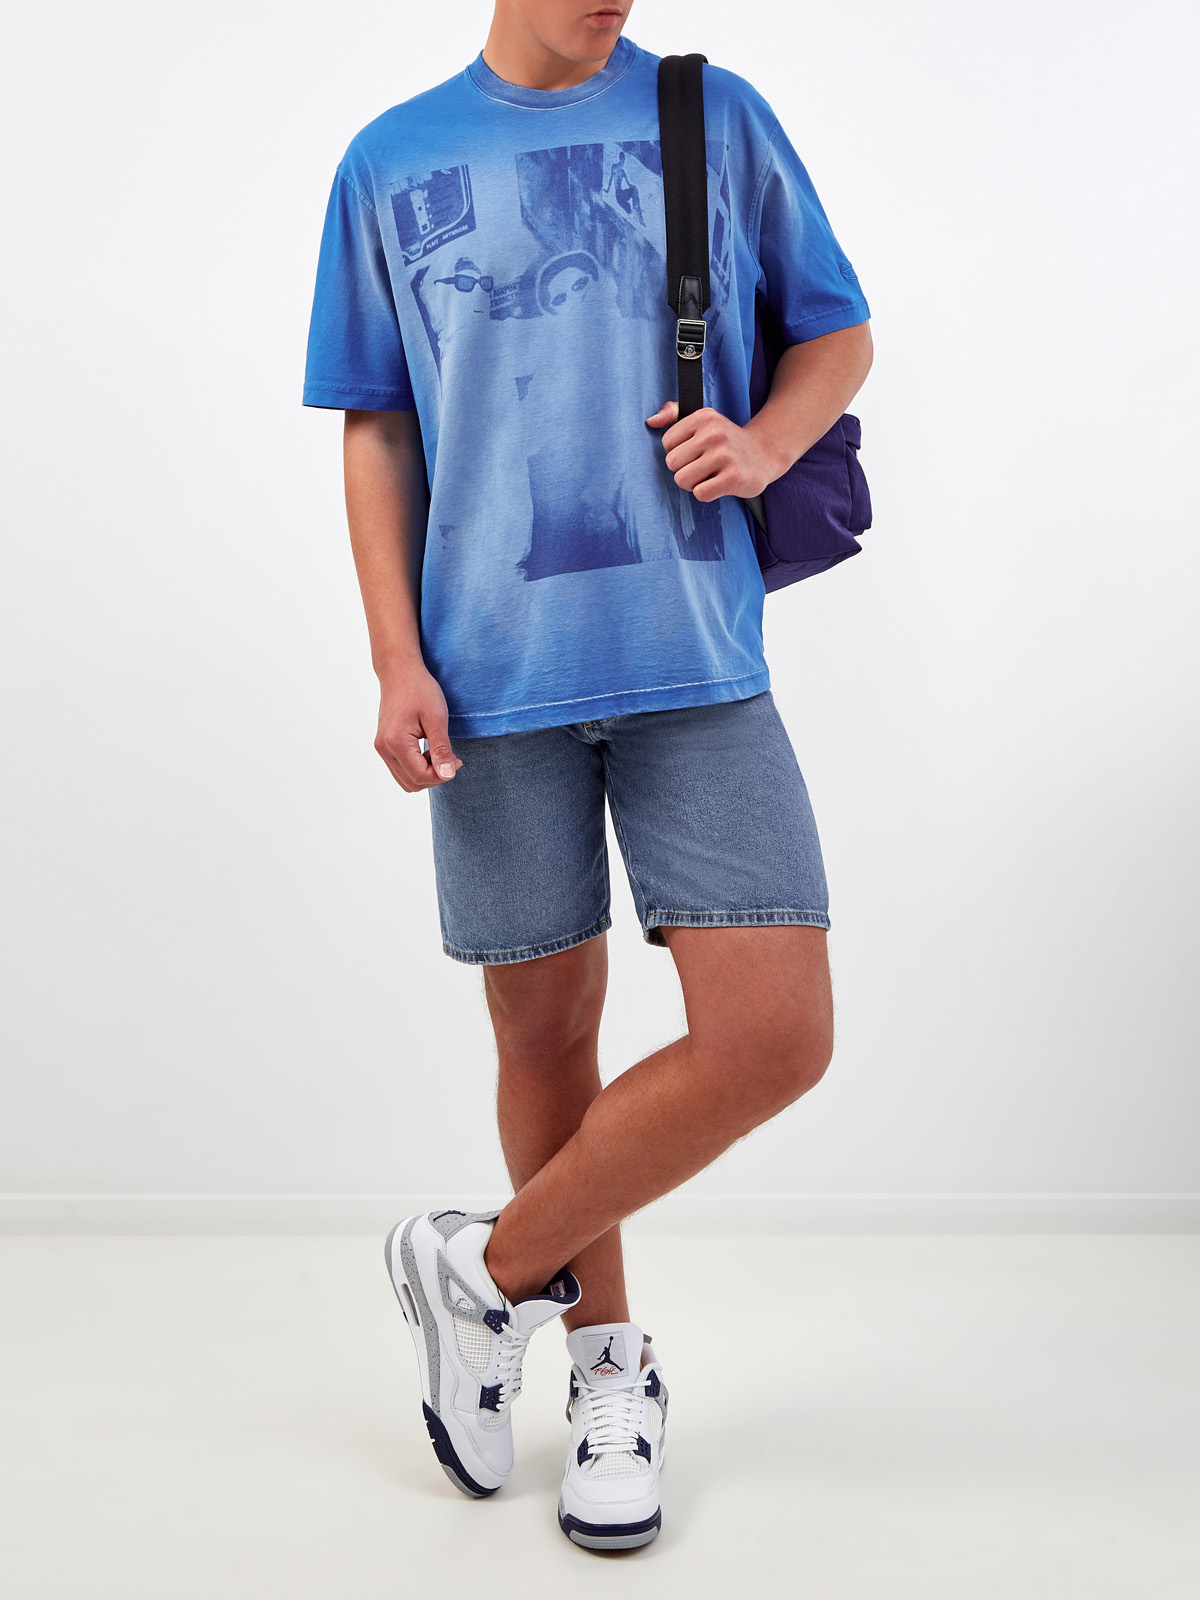 Свободная футболка T-Wash из хлопка джерси с принтом DIESEL, цвет синий, размер S;L;XL;M - фото 2